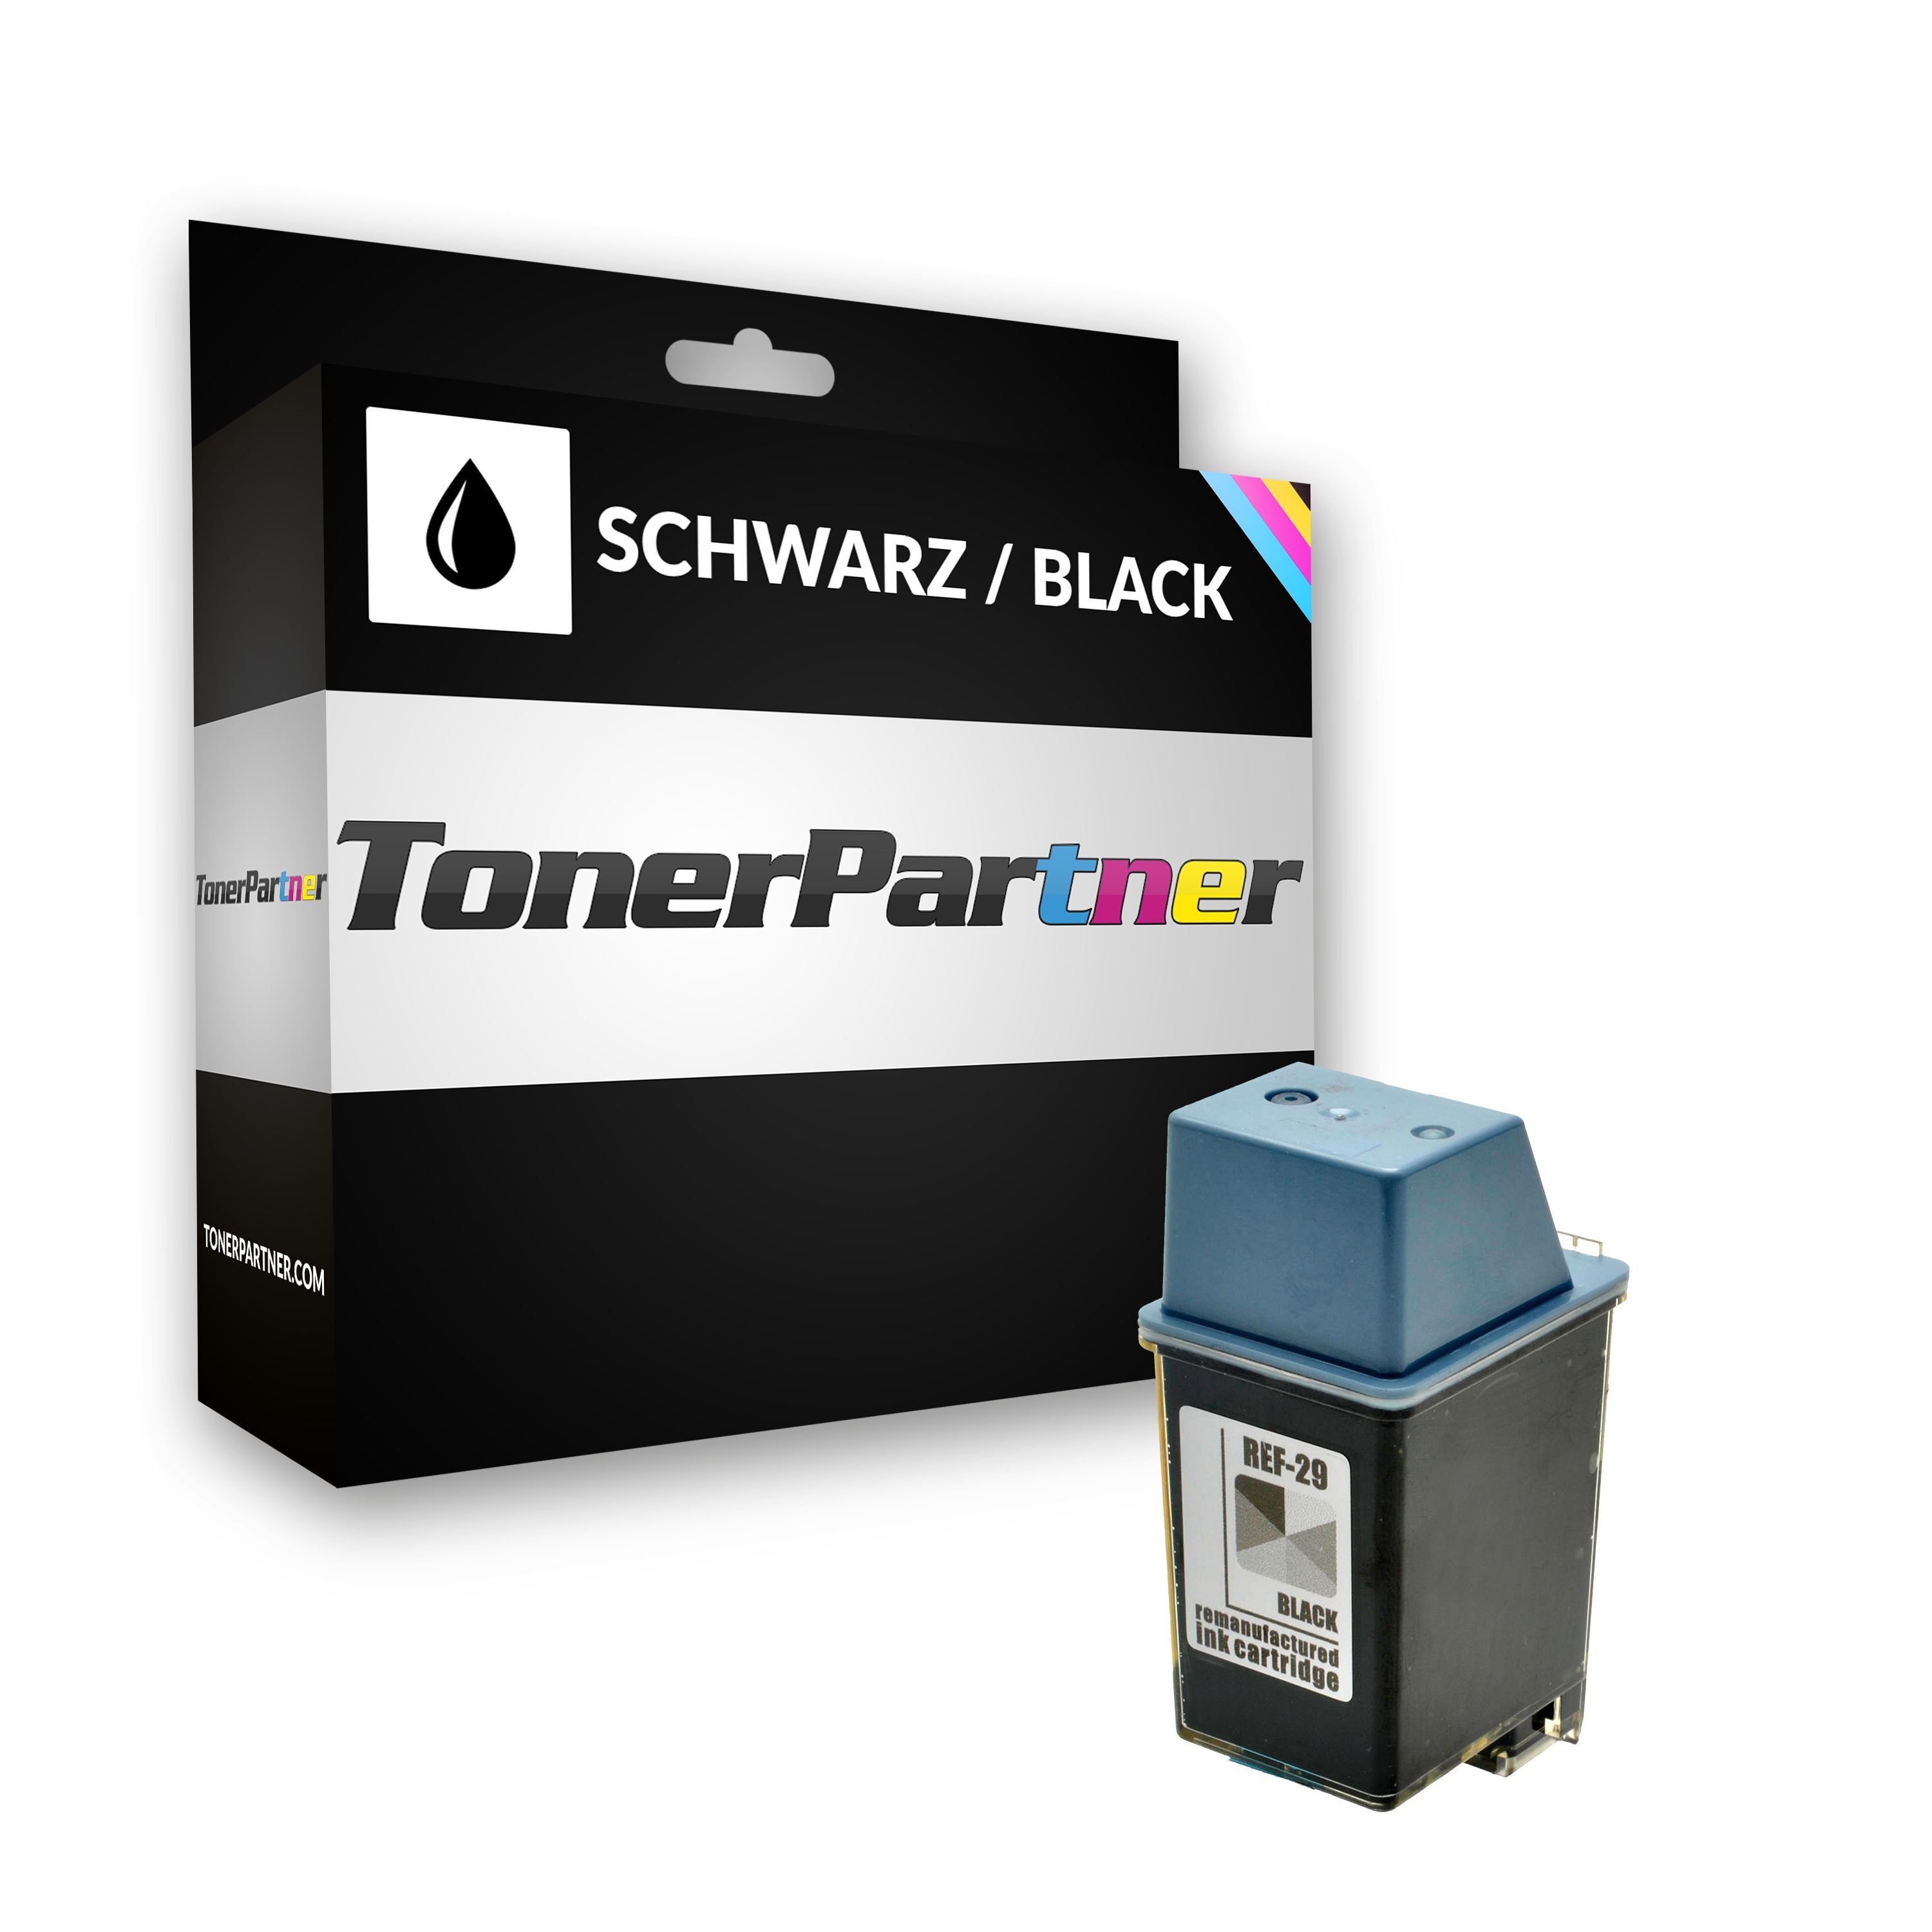 TonerPartner Kompatibel zu HP DeskJet 670 Series Tintenpatrone (29 / 51629 AE) schwarz, 650 Seiten, 3,03 Rp pro Seite, Inhalt: 40 ml von TonerPartner